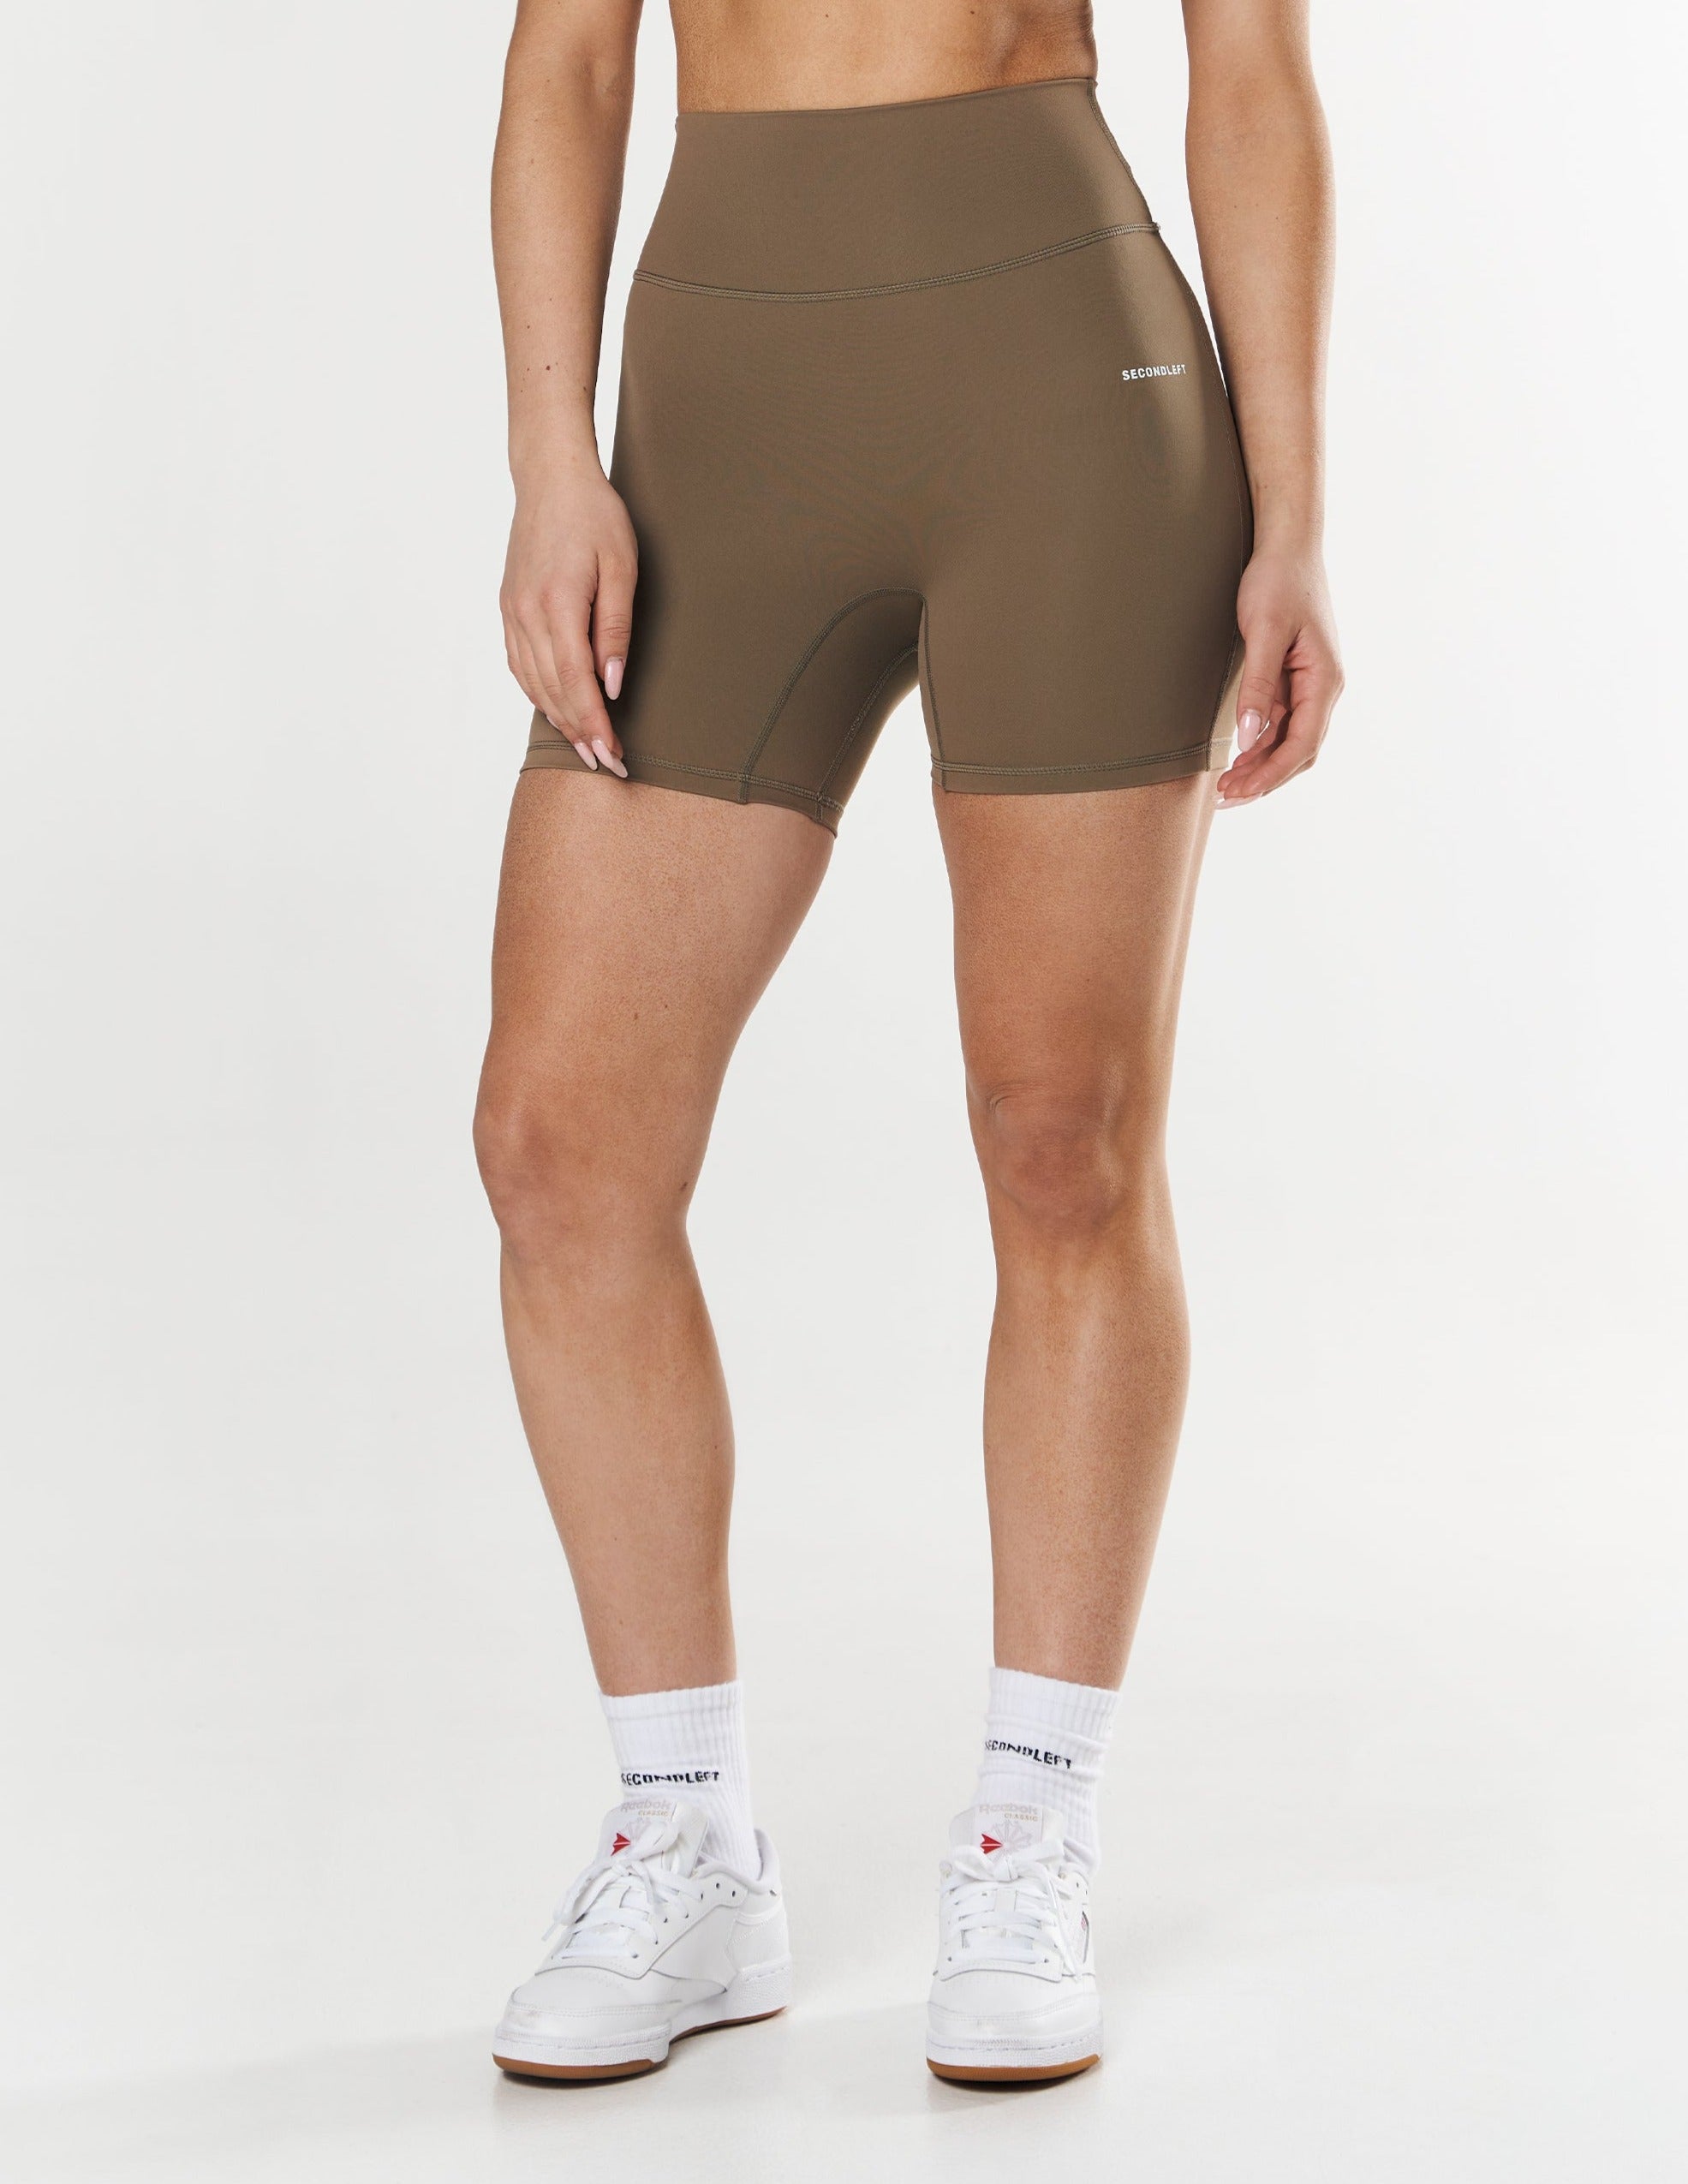 sl-midi-biker-shorts-nandex-™-brown